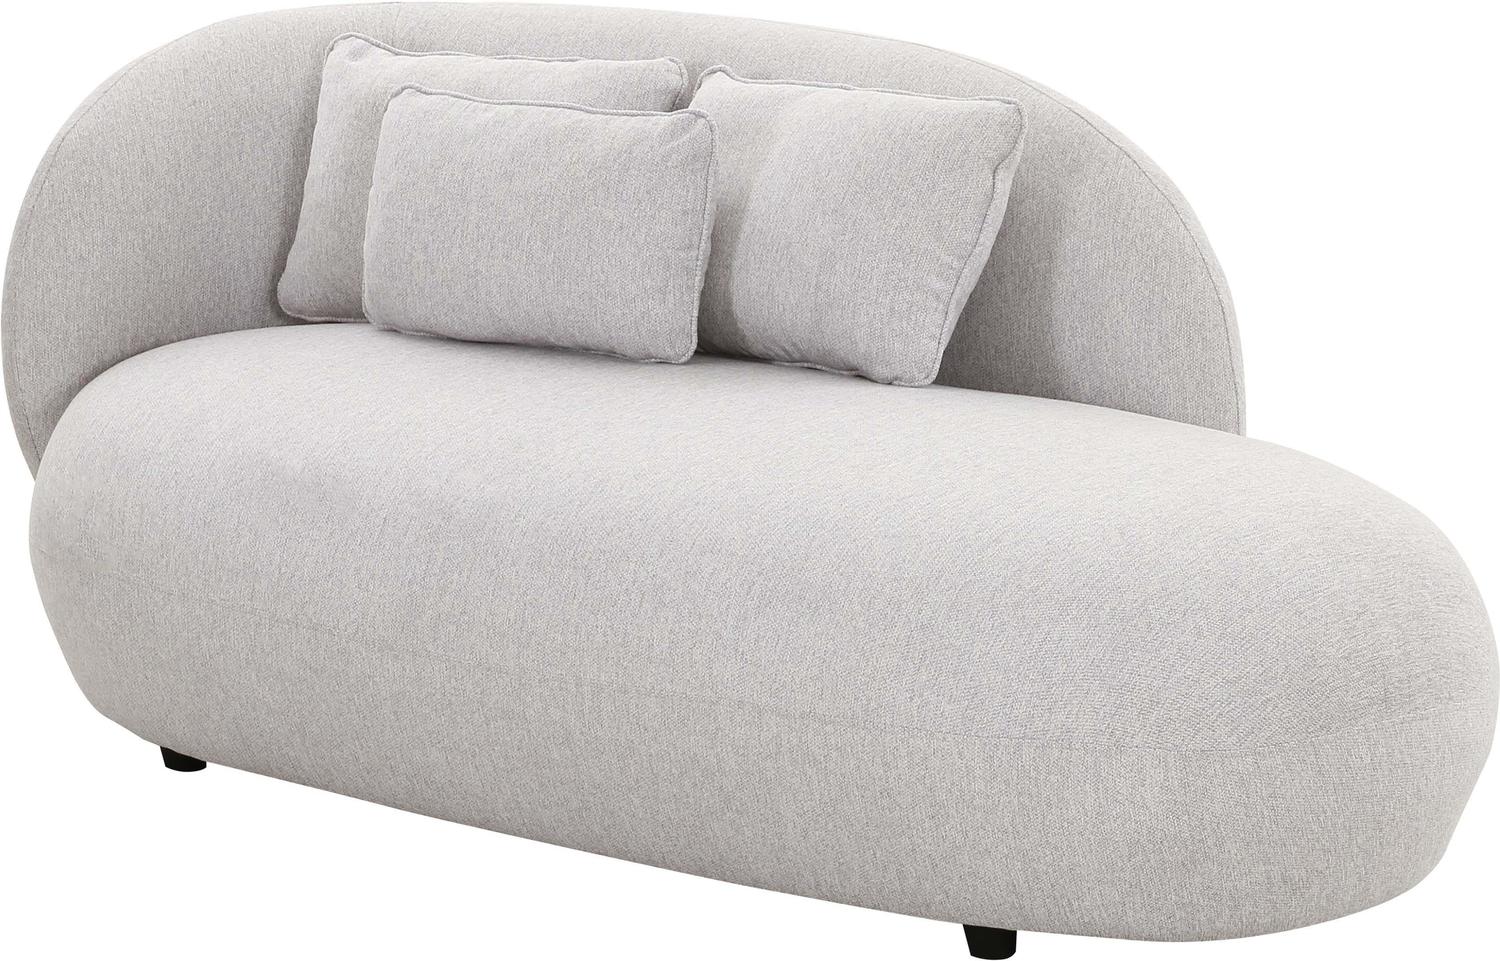 white velvet sectional Tov Furniture Settees Grey